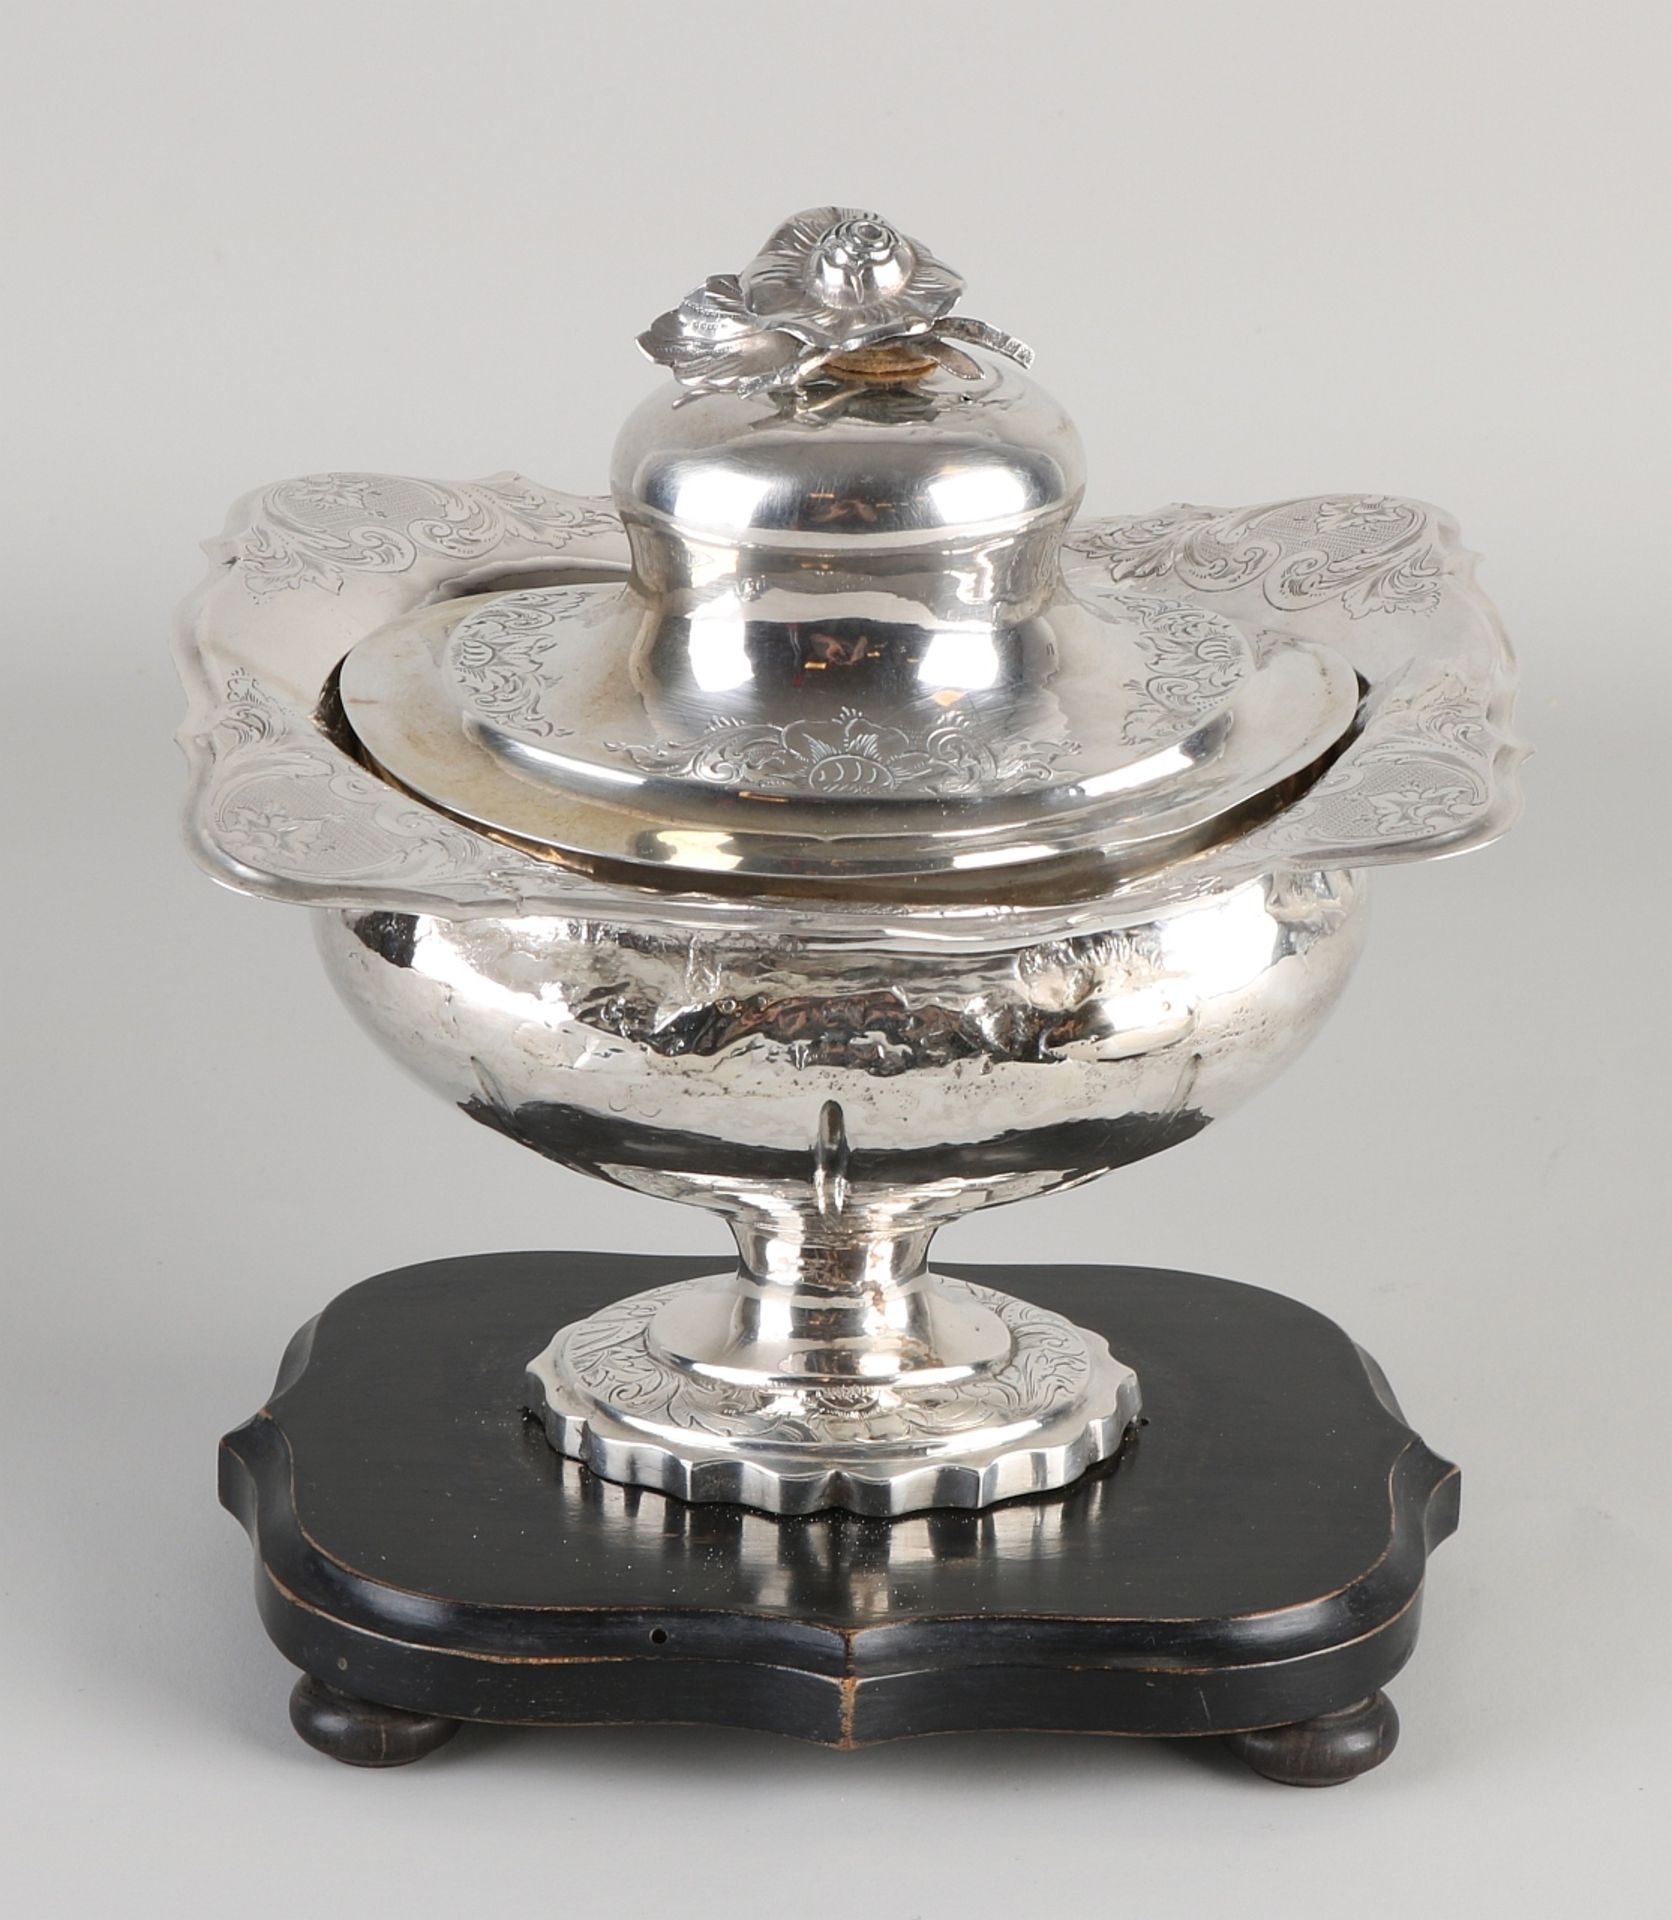 Silbernes Tabakglas, 833/000, umrissenes Modell mit Gravur und einer Blume als Knopf auf dem Deckel